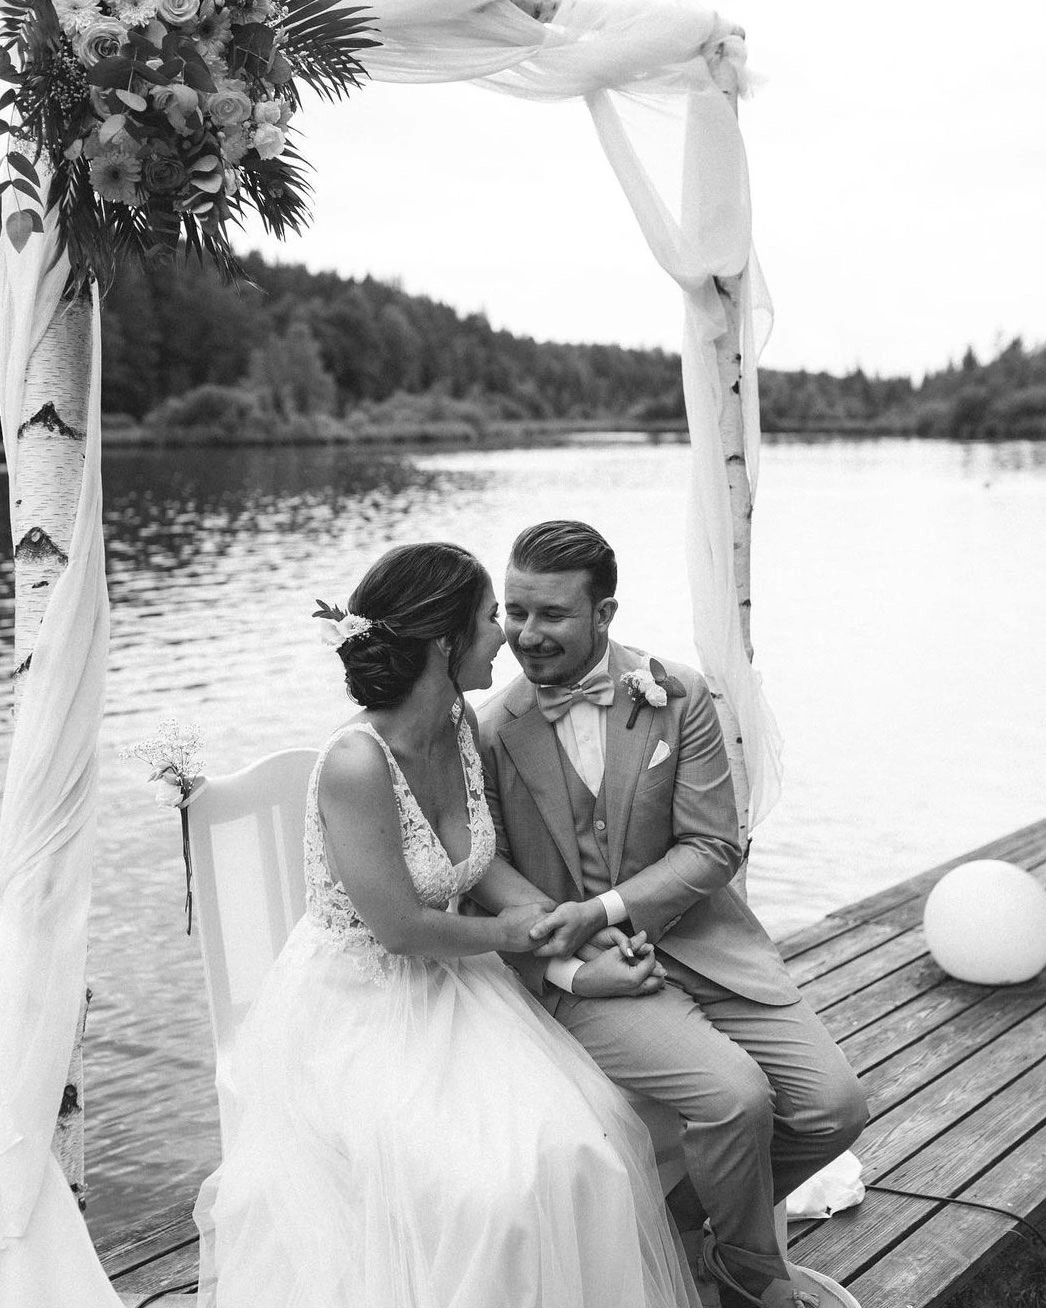 Brautpaar sitzt auf einem Steg, Braut mit weißem Hochzeitskleid, Make-up und gesteckter Brautfrisur. Haare und Make-up von Denise Drahtmueller